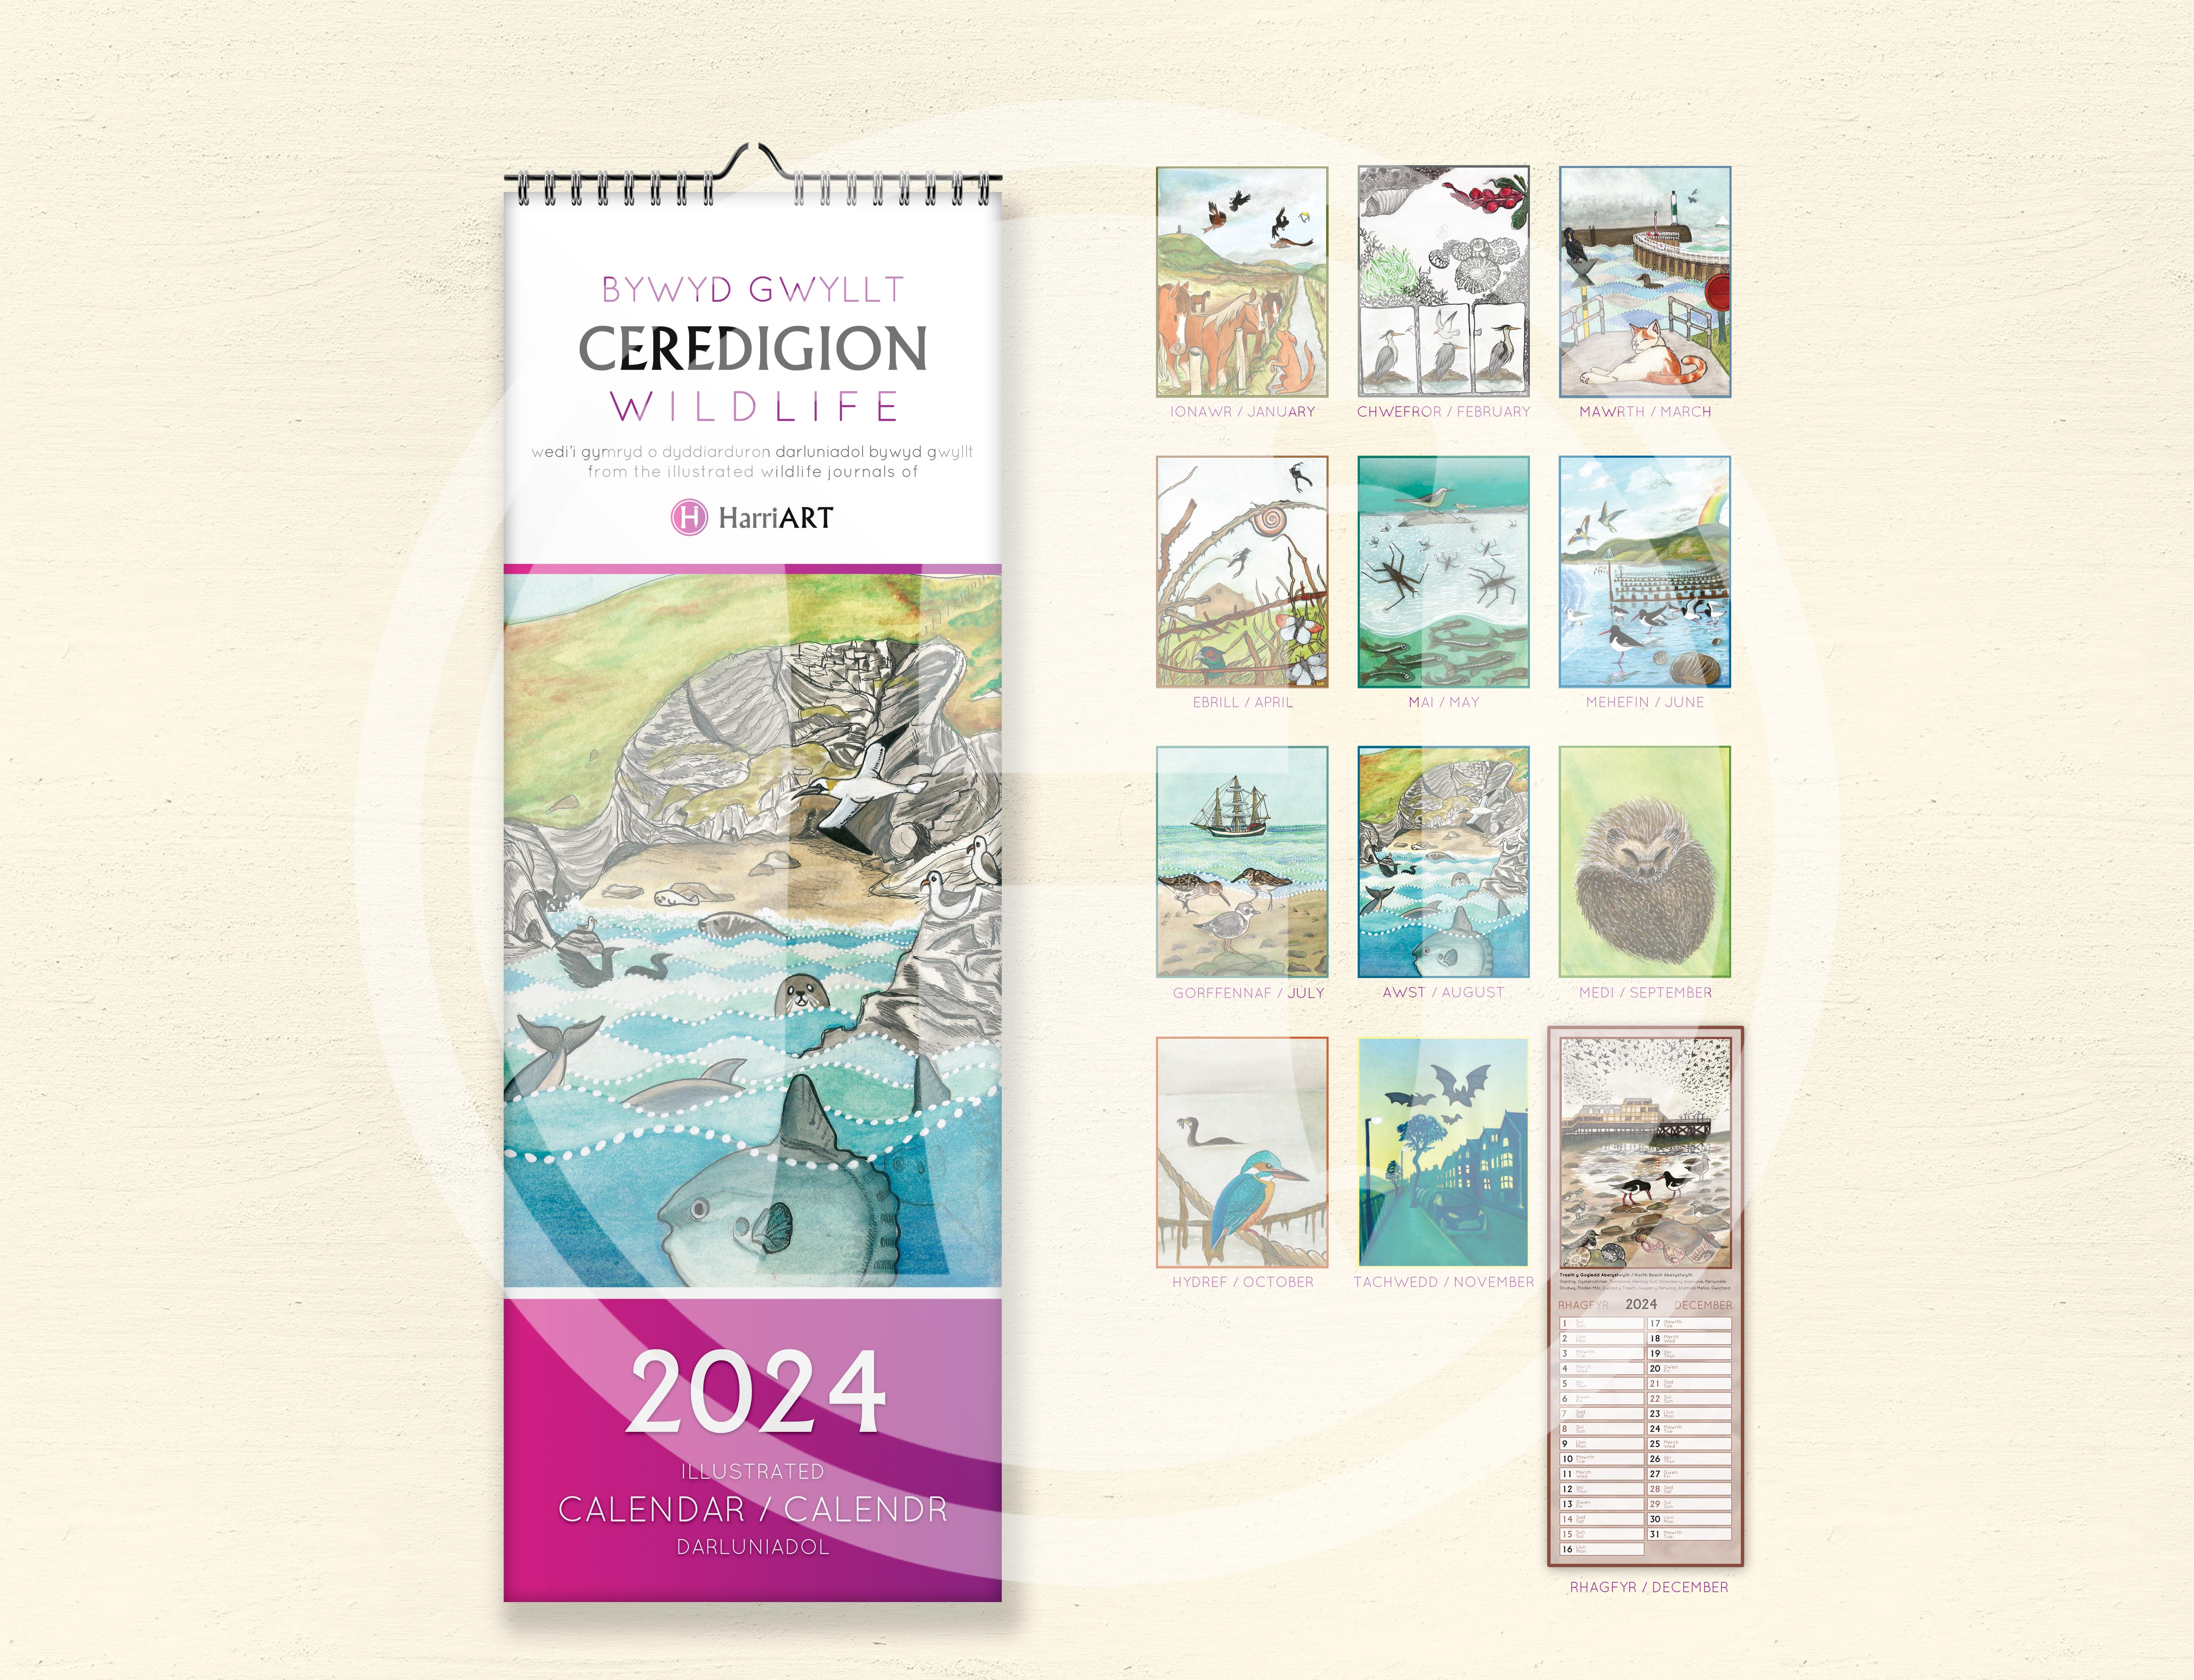 Bywyd Gwyllt Ceredigion Wildlife 204 Calendar